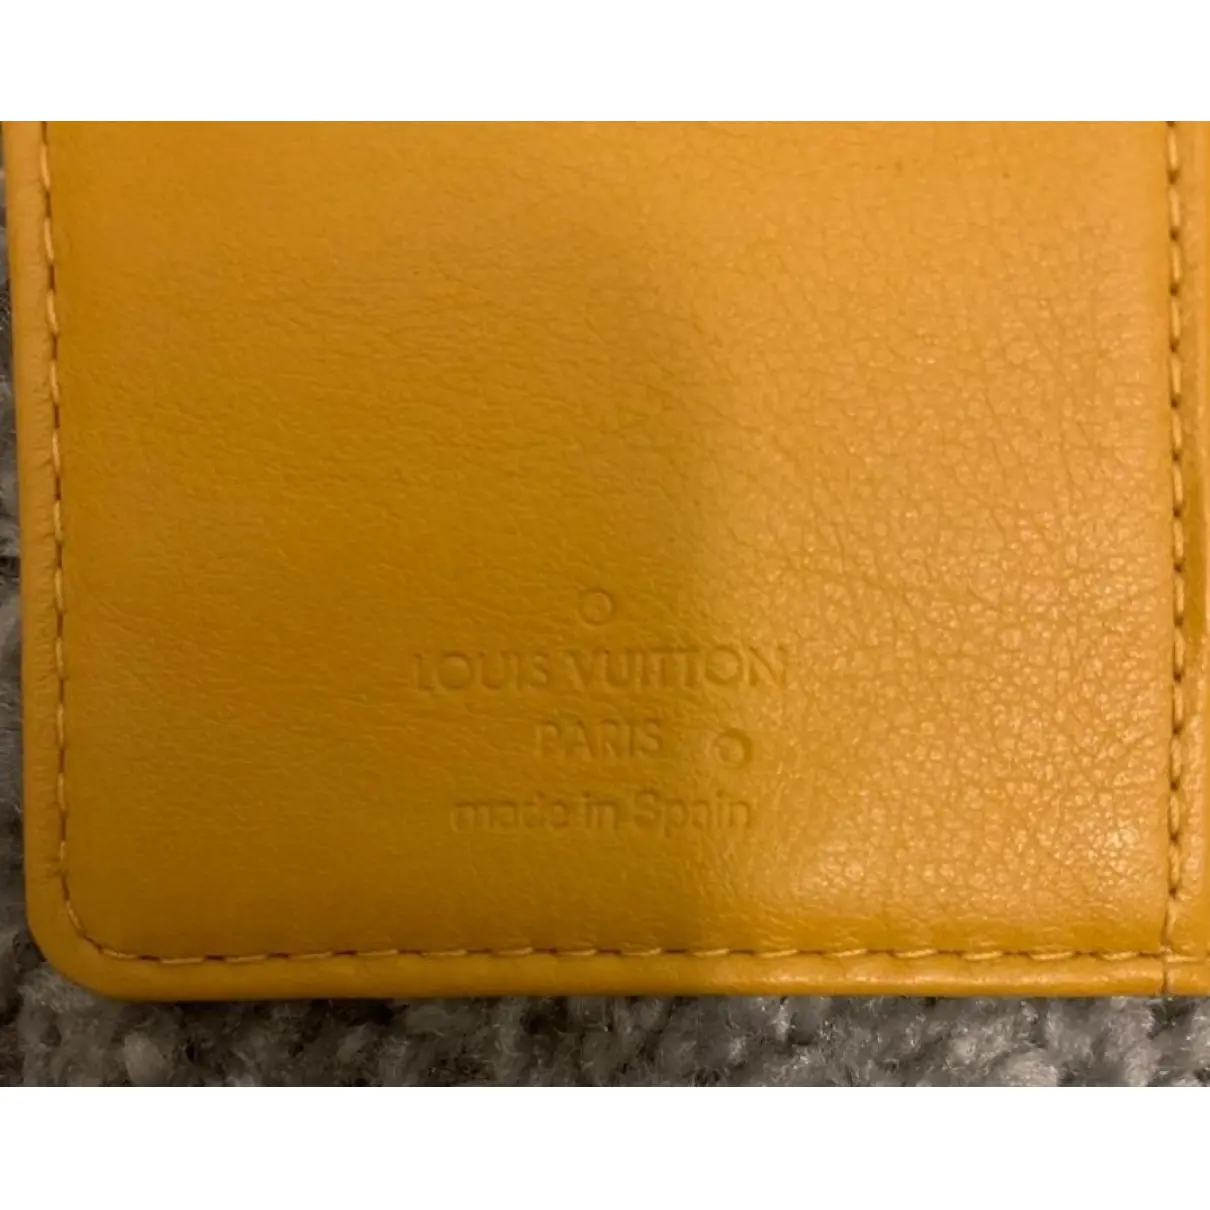 Luxury Louis Vuitton Purses, wallets & cases Women